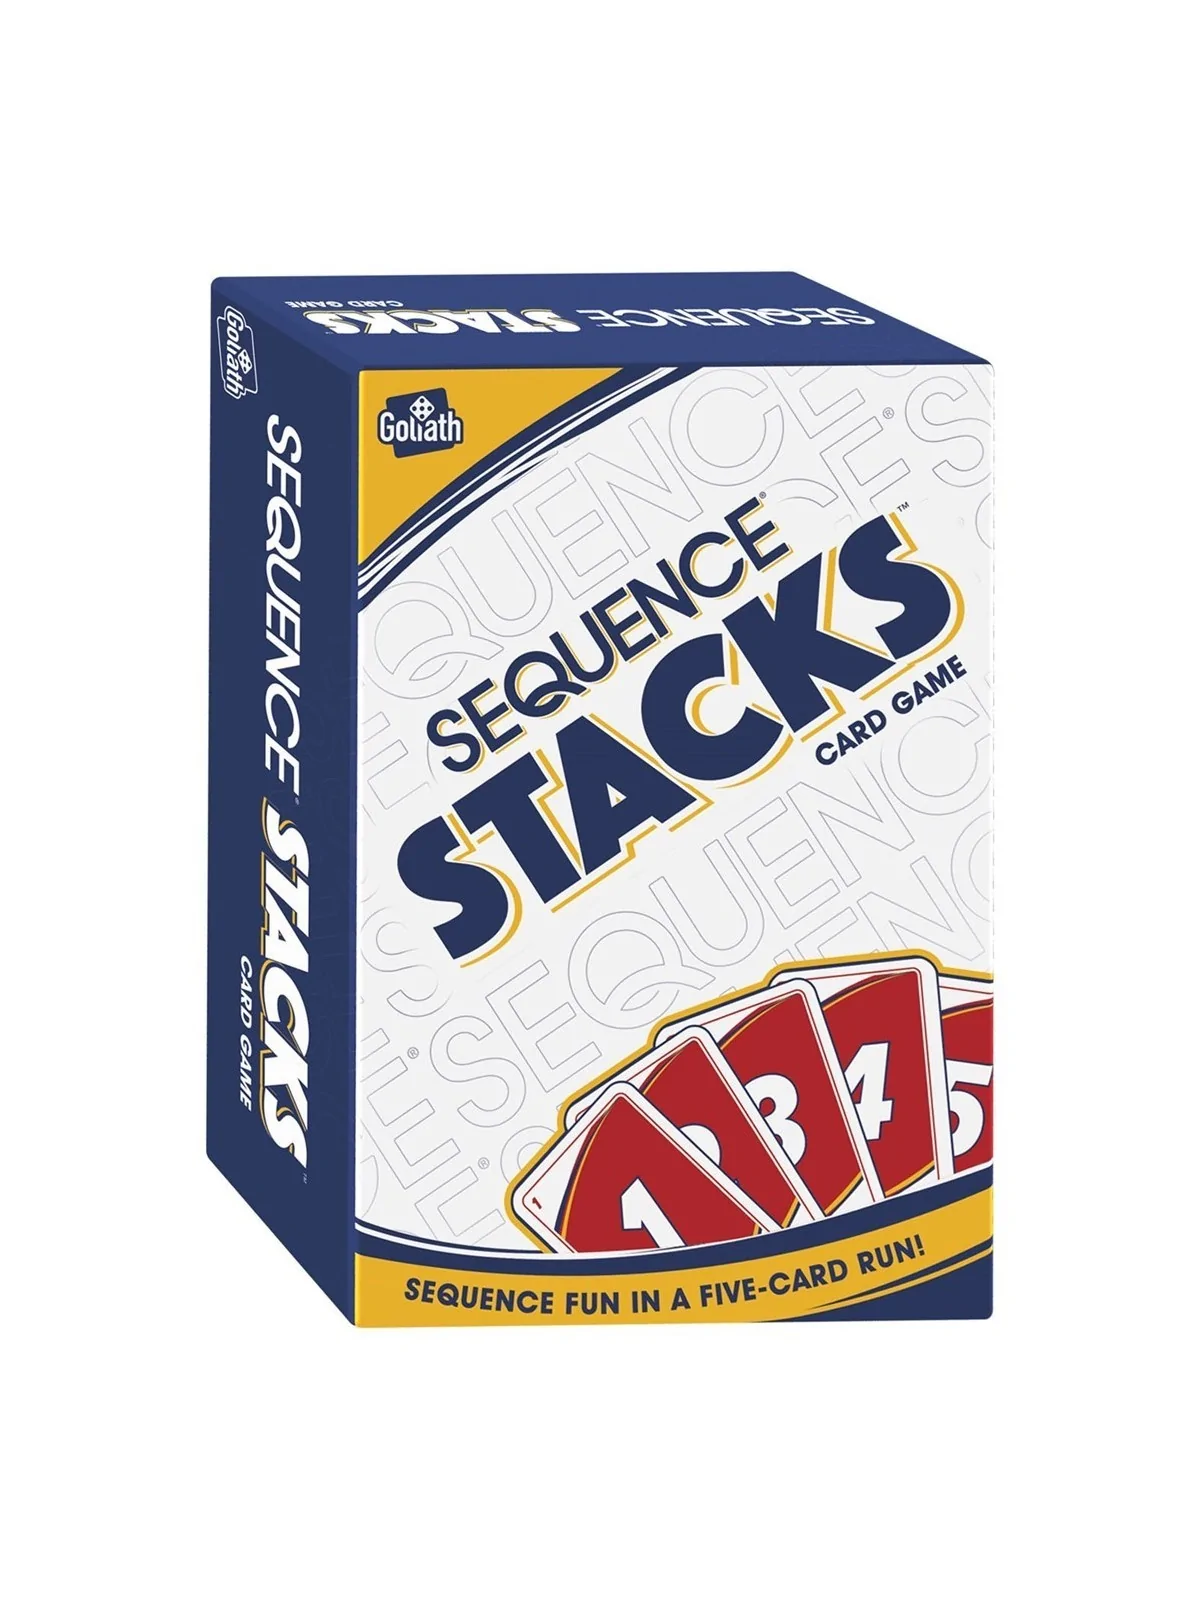 Comprar Sequence Stacks barato al mejor precio 6,76 € de Goliath bv